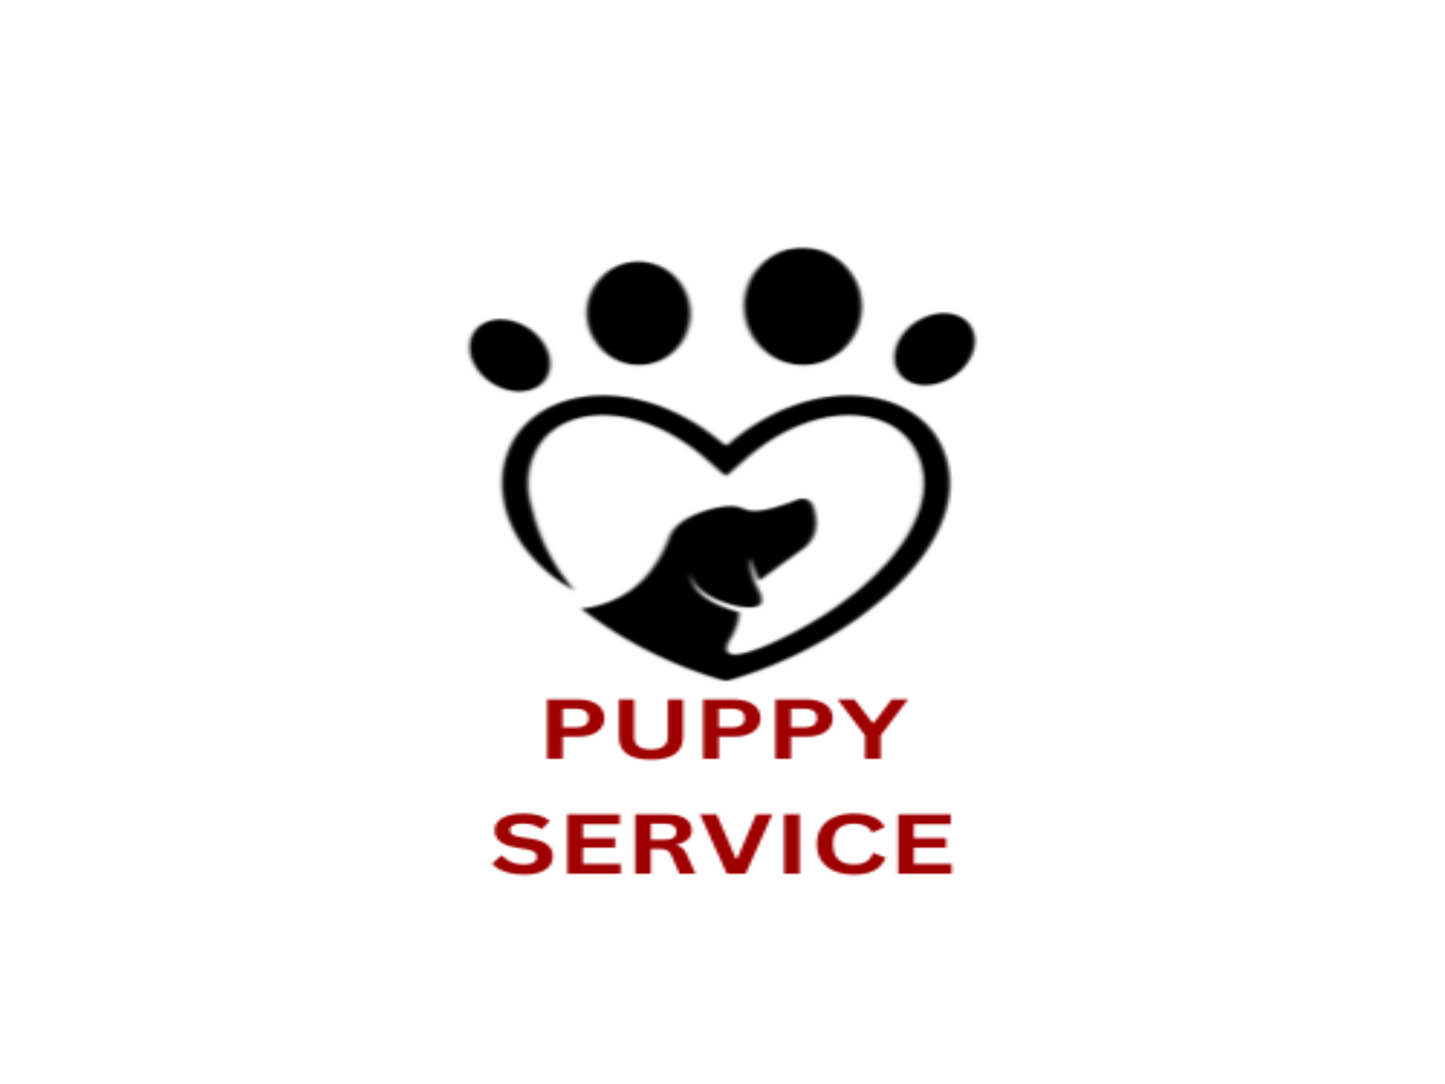 Puppy service